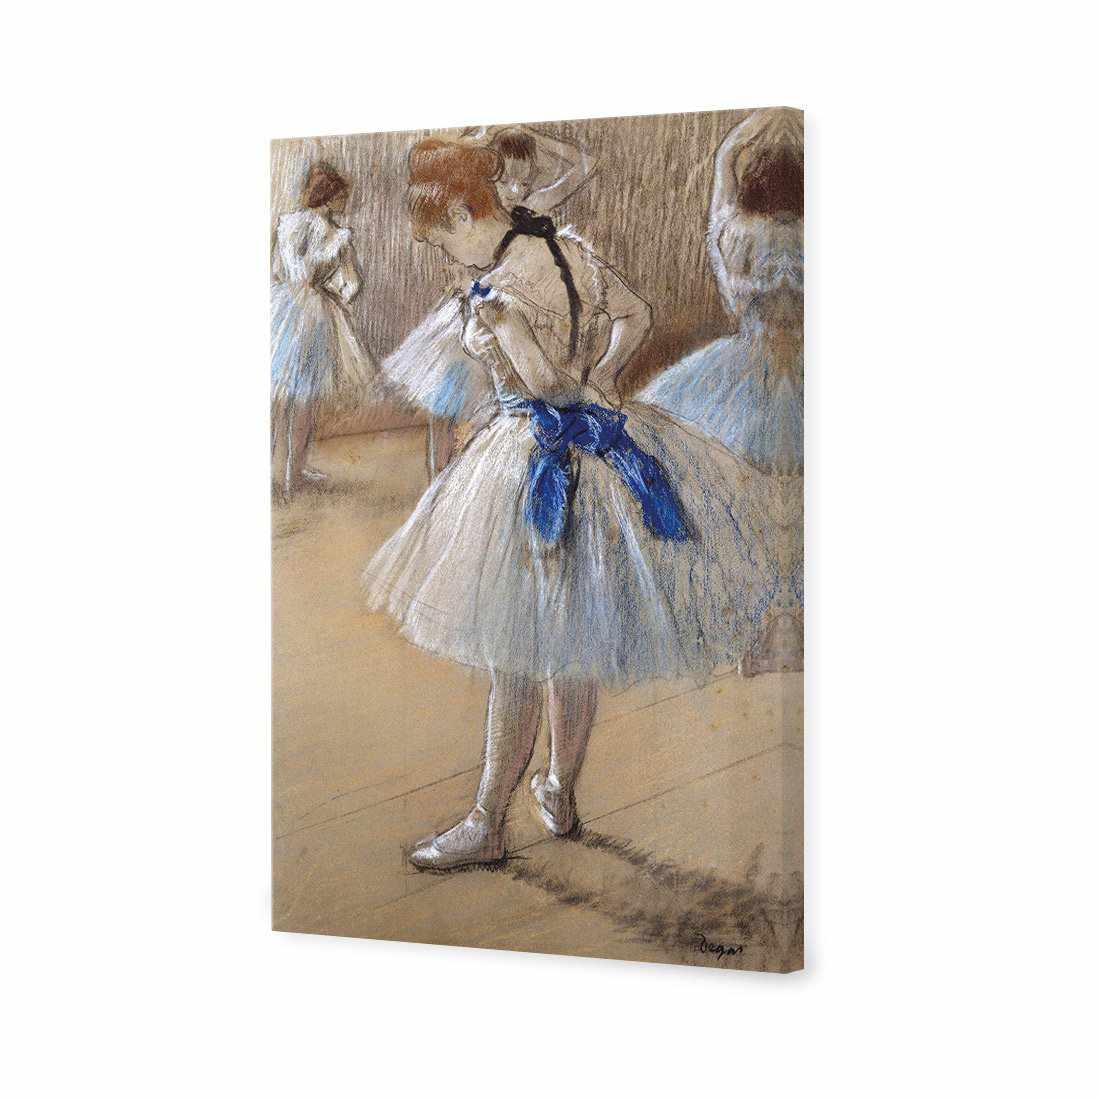 Dancer by Edgar Degas Canvas Art-Canvas-Wall Art Designs-45x30cm-Canvas - No Frame-Wall Art Designs